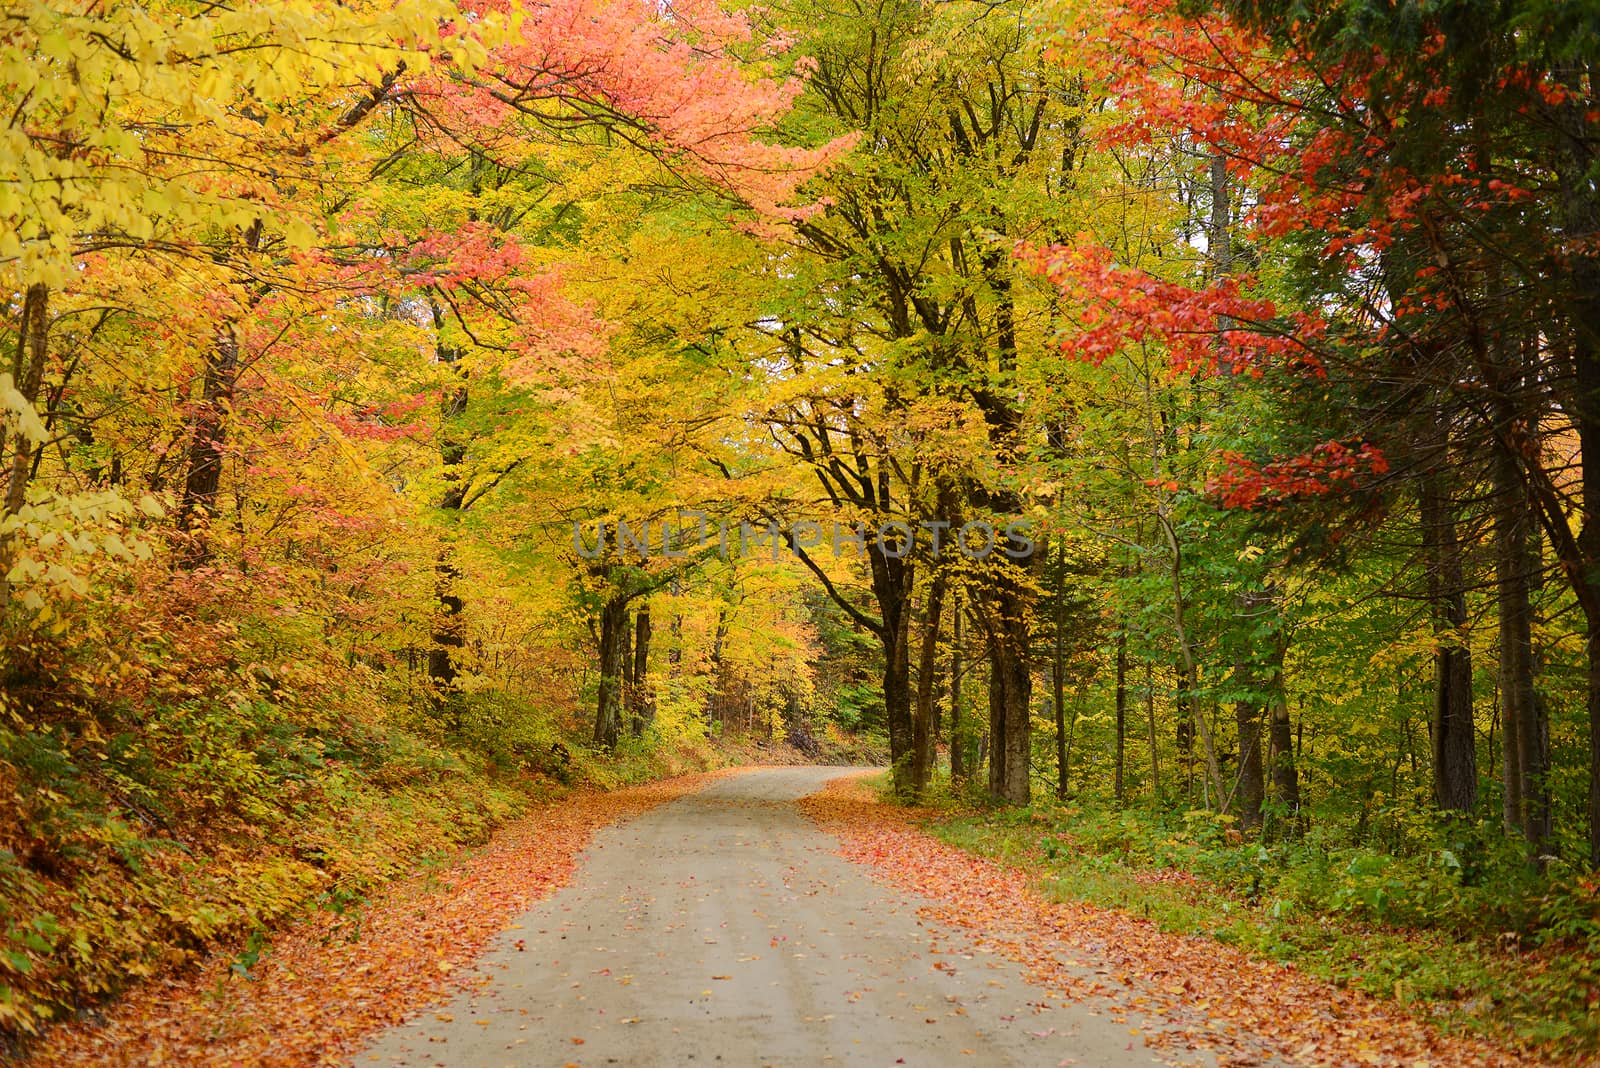 vermont road in autumn by porbital